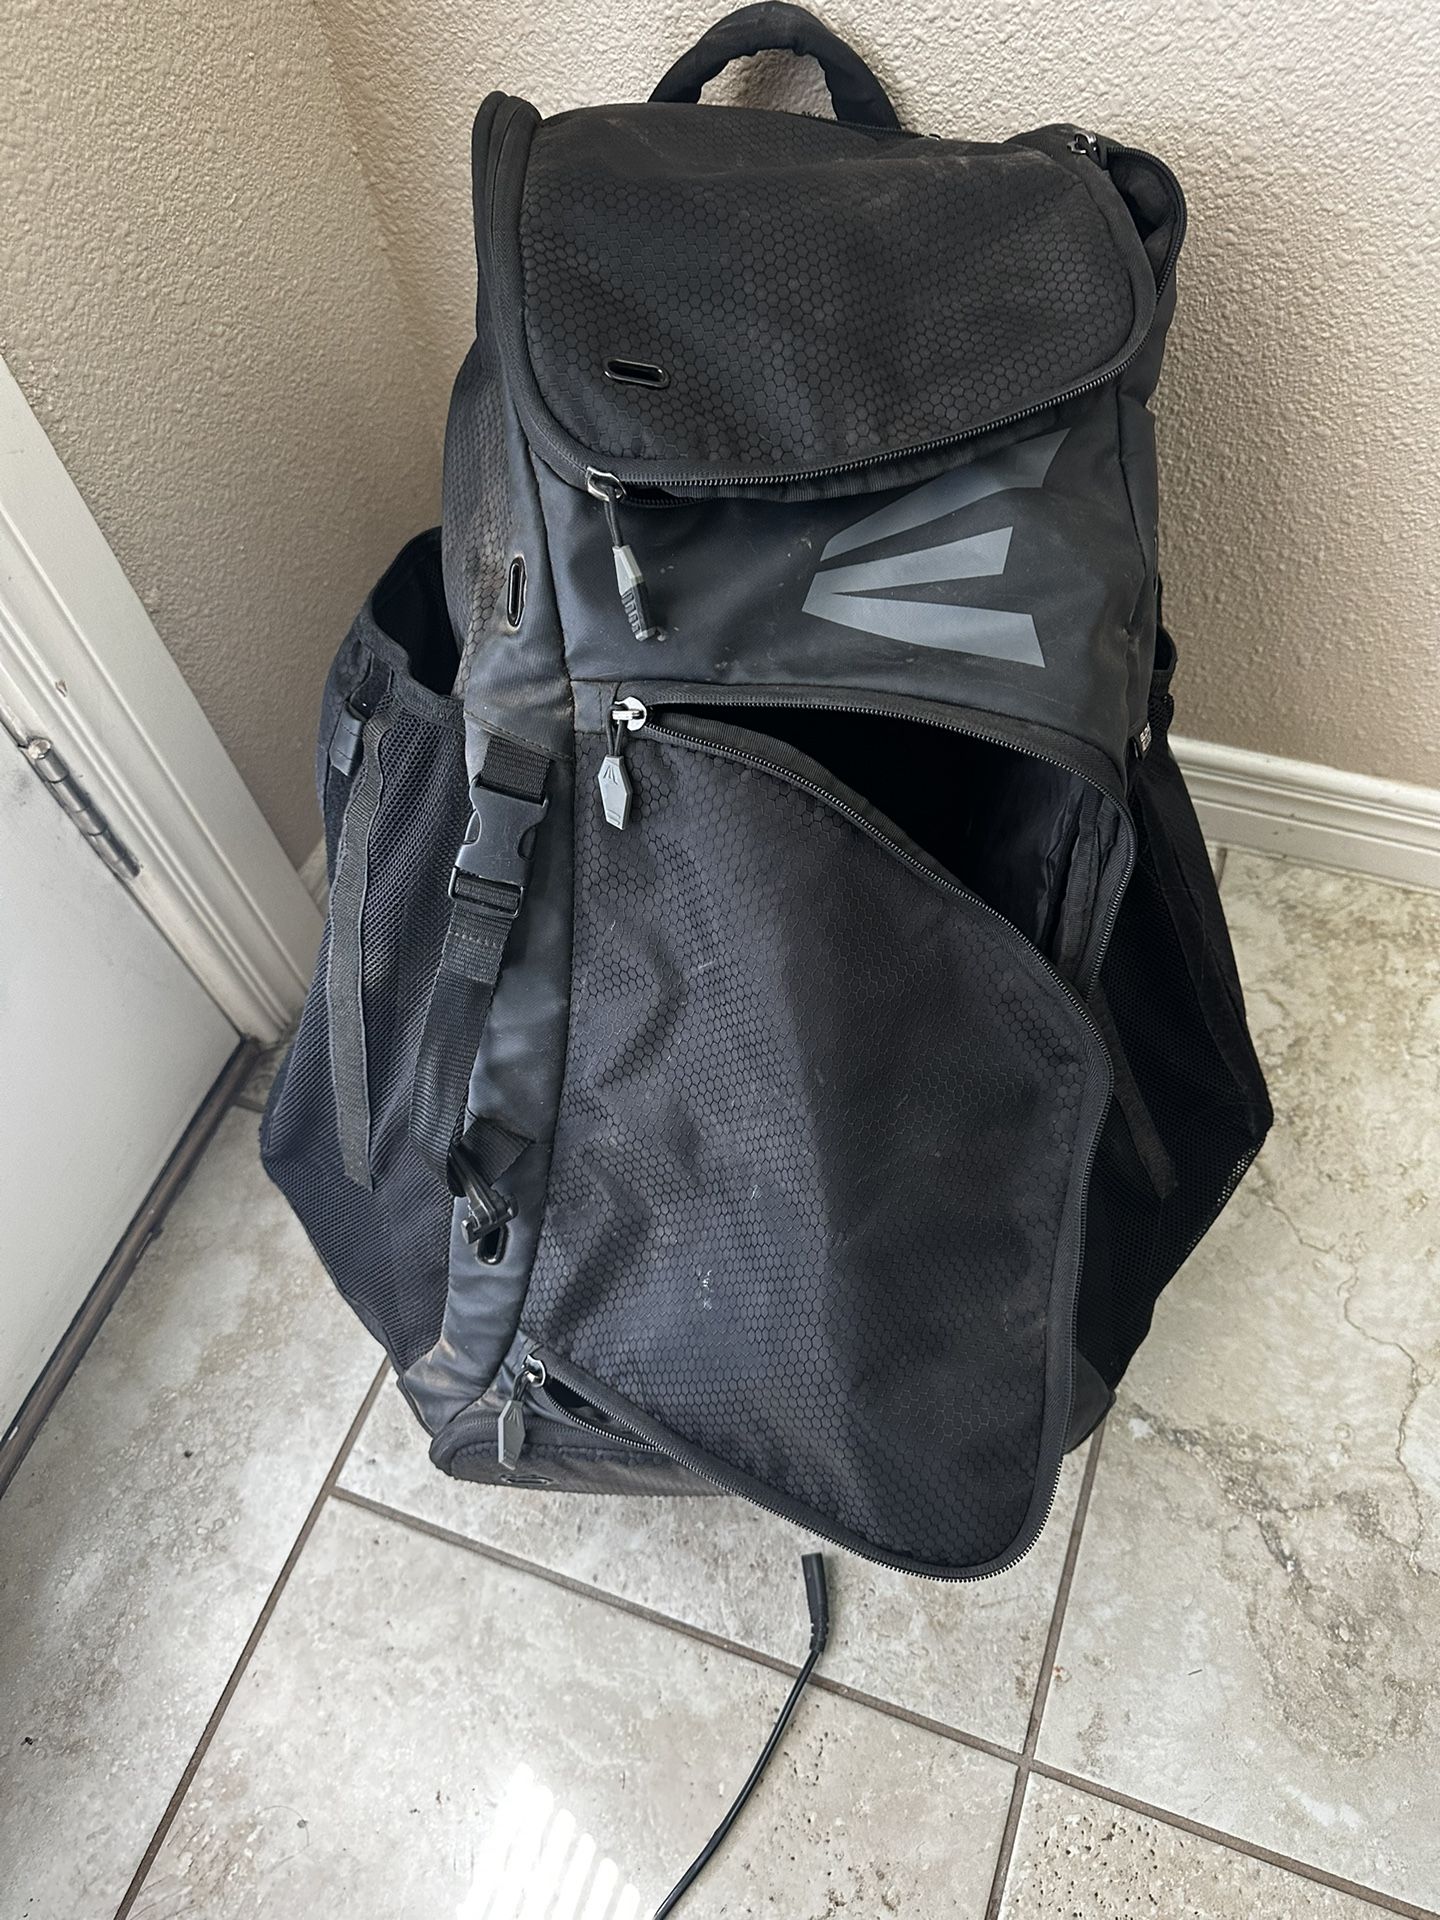 Catcher Wear Backpack 